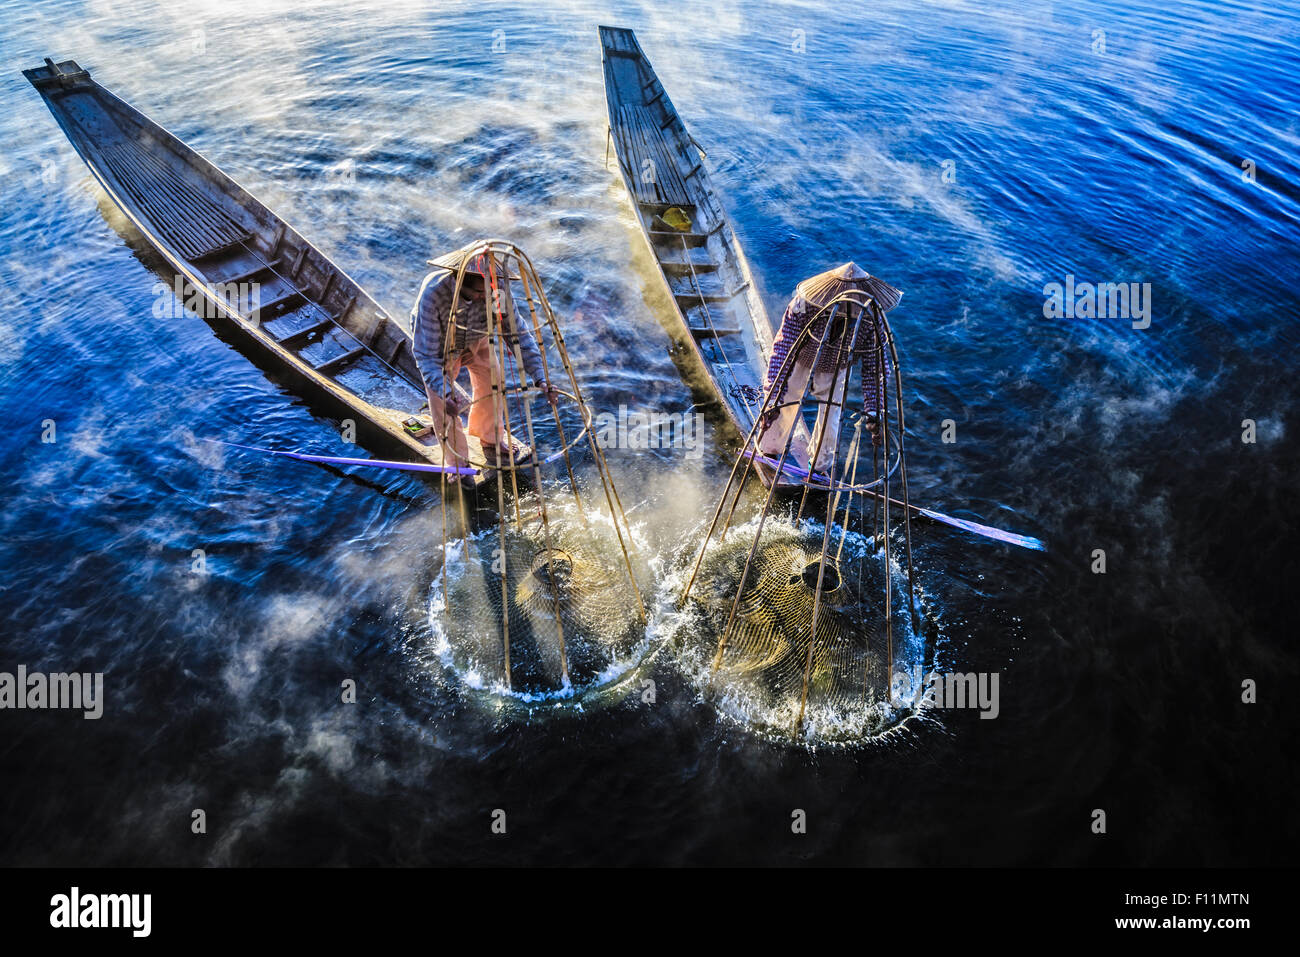 High angle view of Asian les pêcheurs qui utilisent des filets de pêche en canoë sur la rivière Banque D'Images